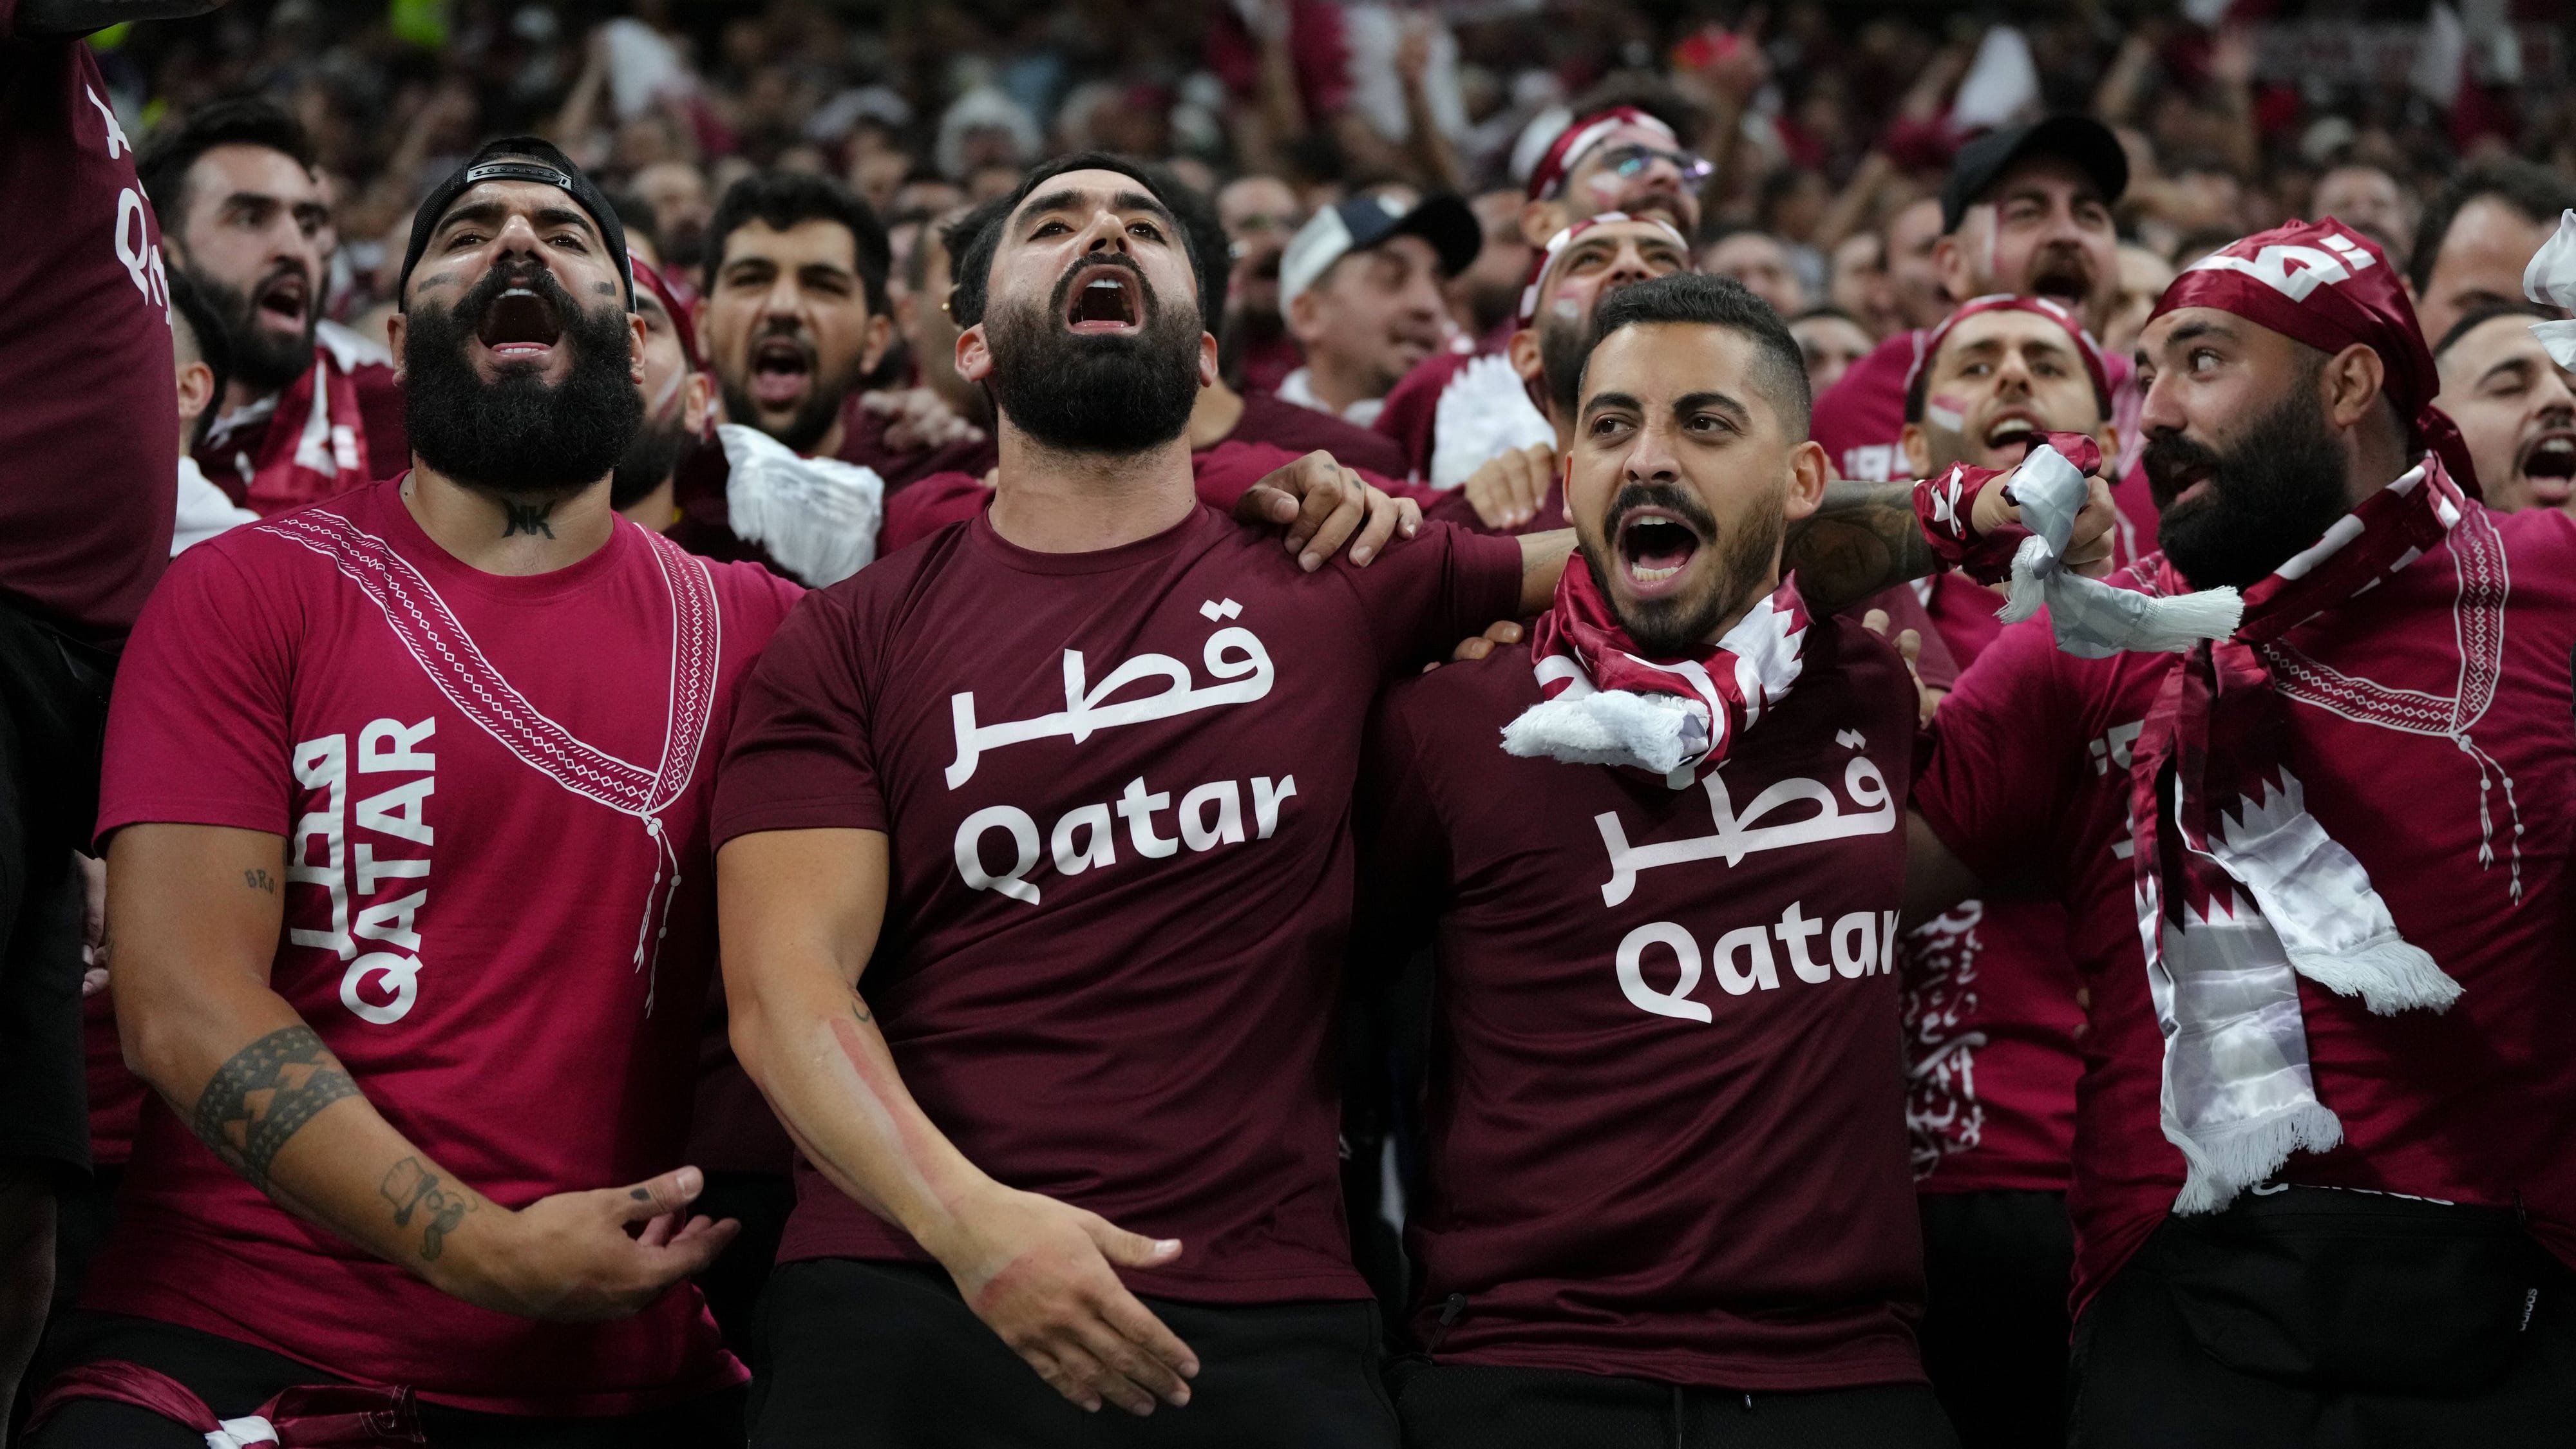 WM 2022 in Katar: Das sind die Fans des Gastgebers